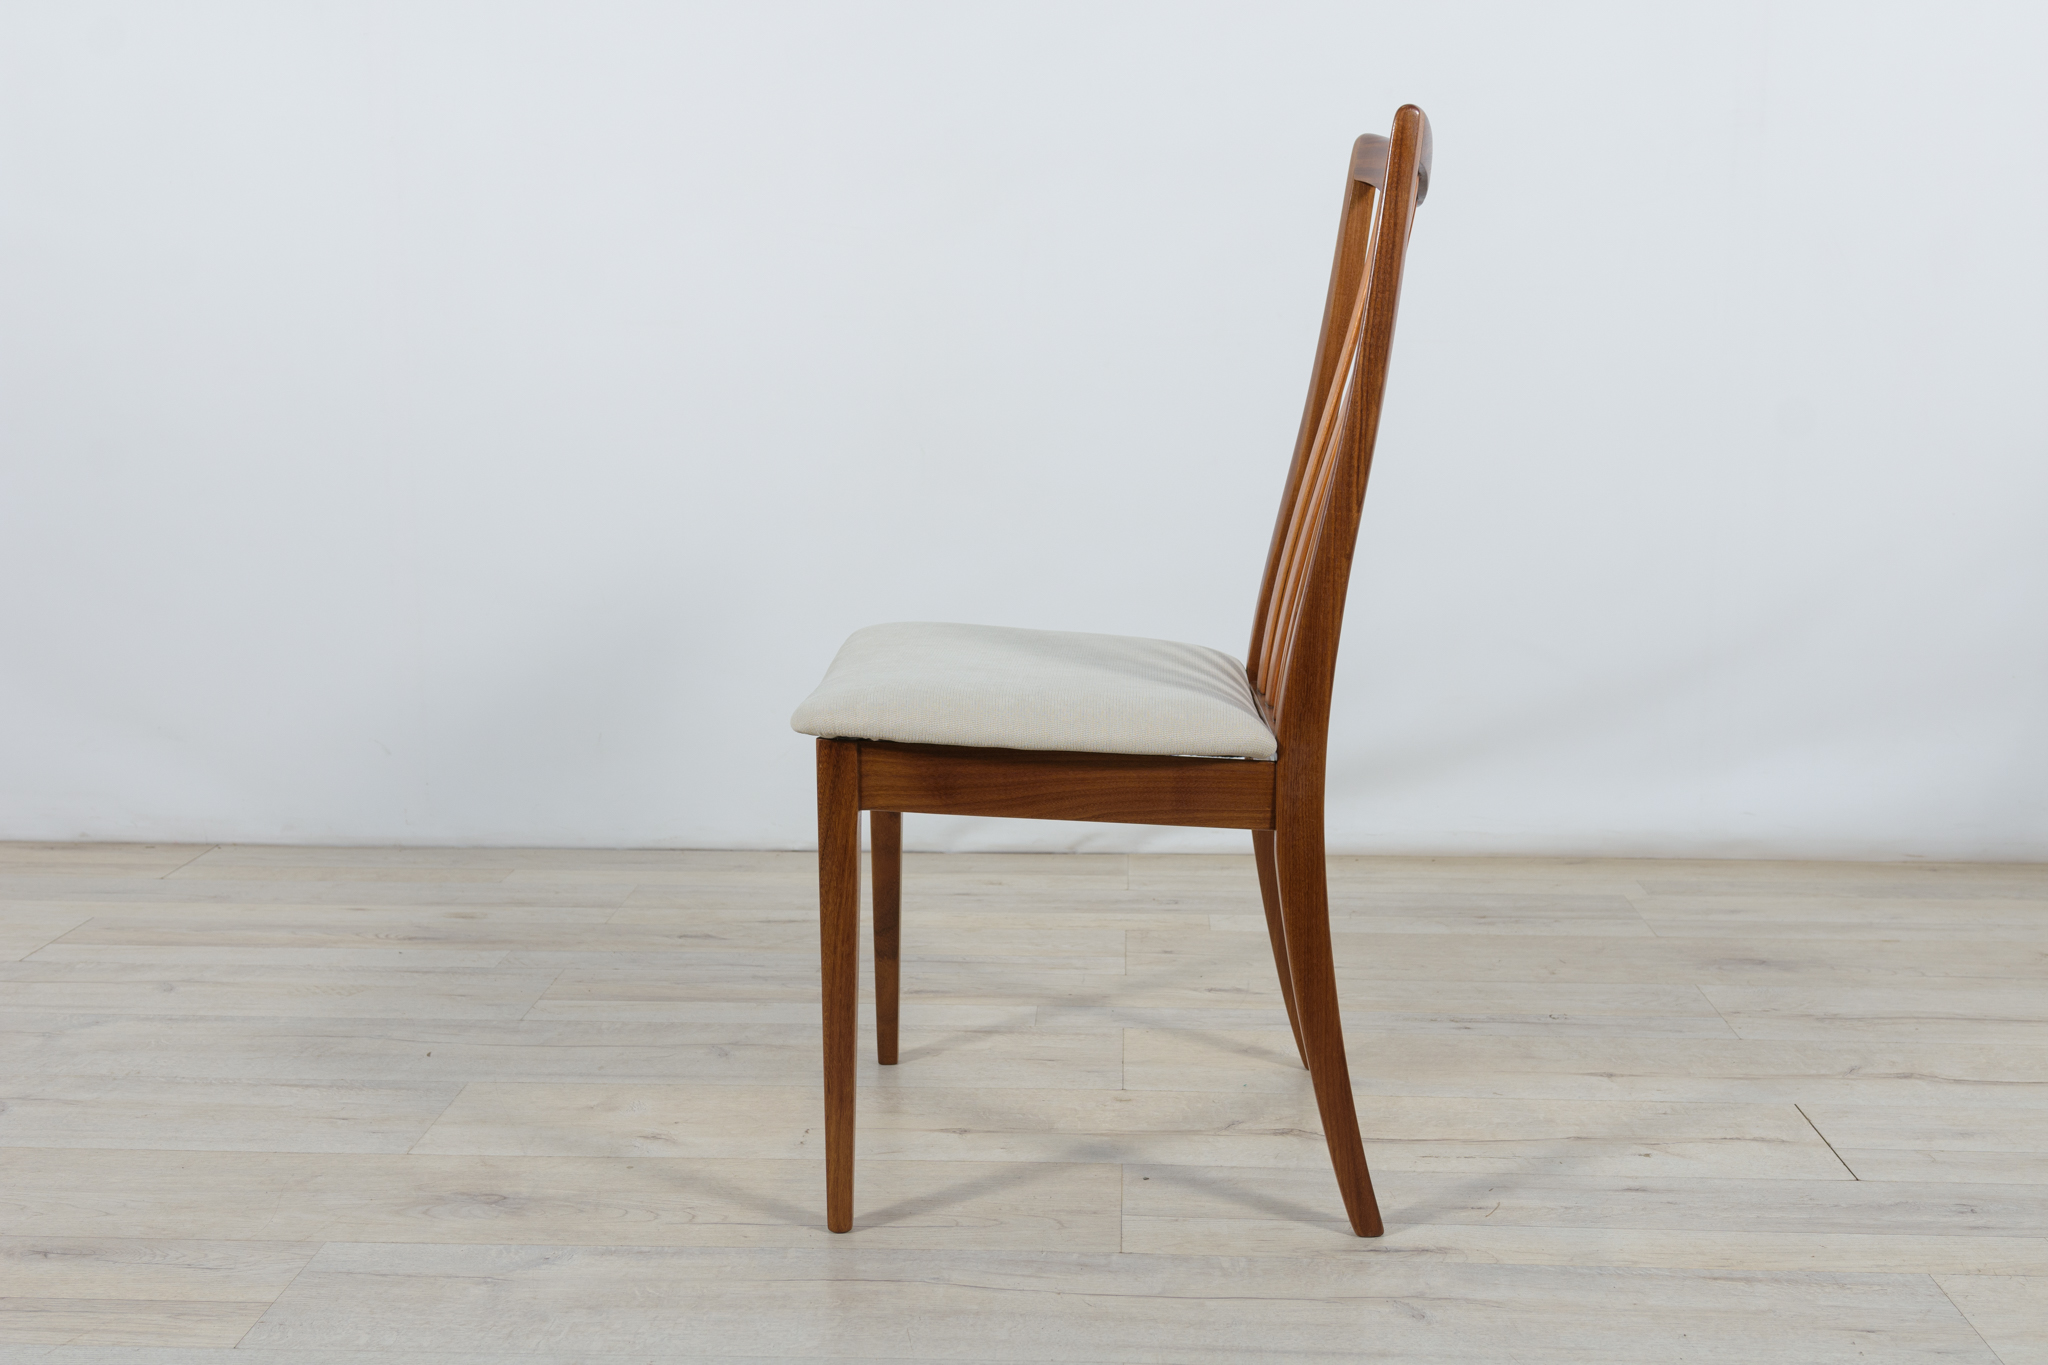 Krzesła tekowe lata 60. L. Dandy, G-Plan, Wielka Brytania z boku krzesło